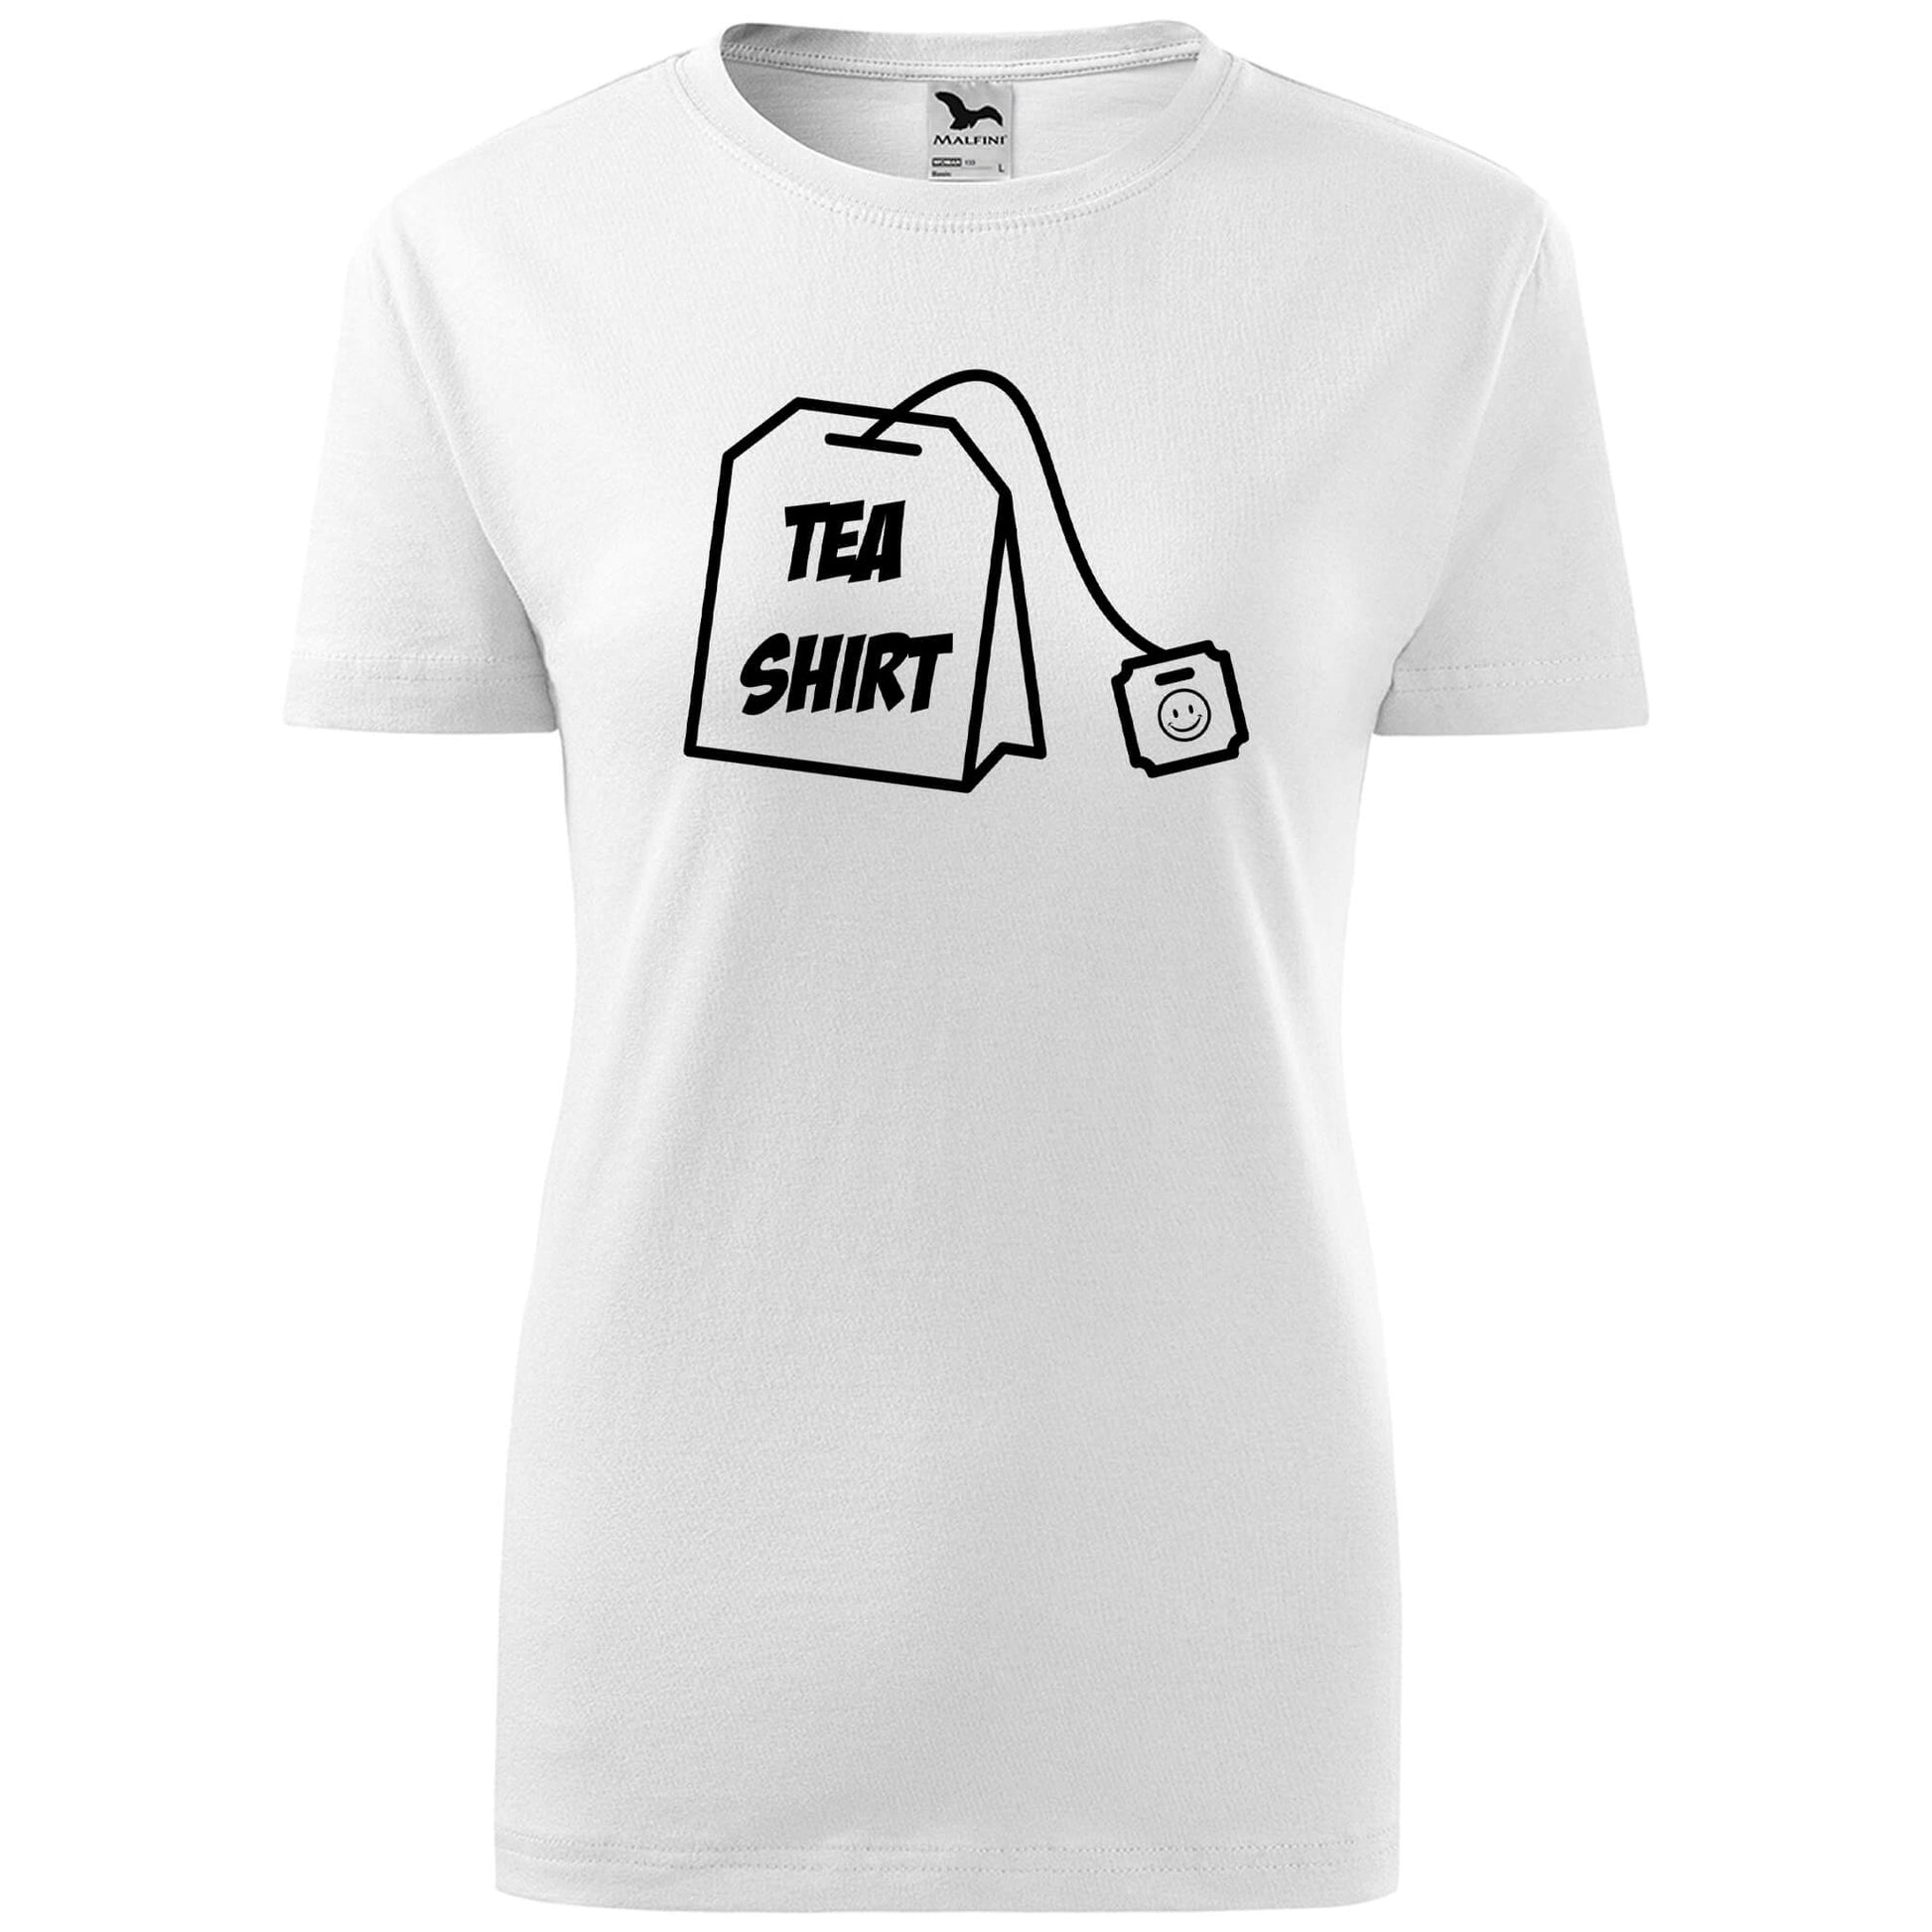 T-shirt - Tea shirt - rvdesignprint